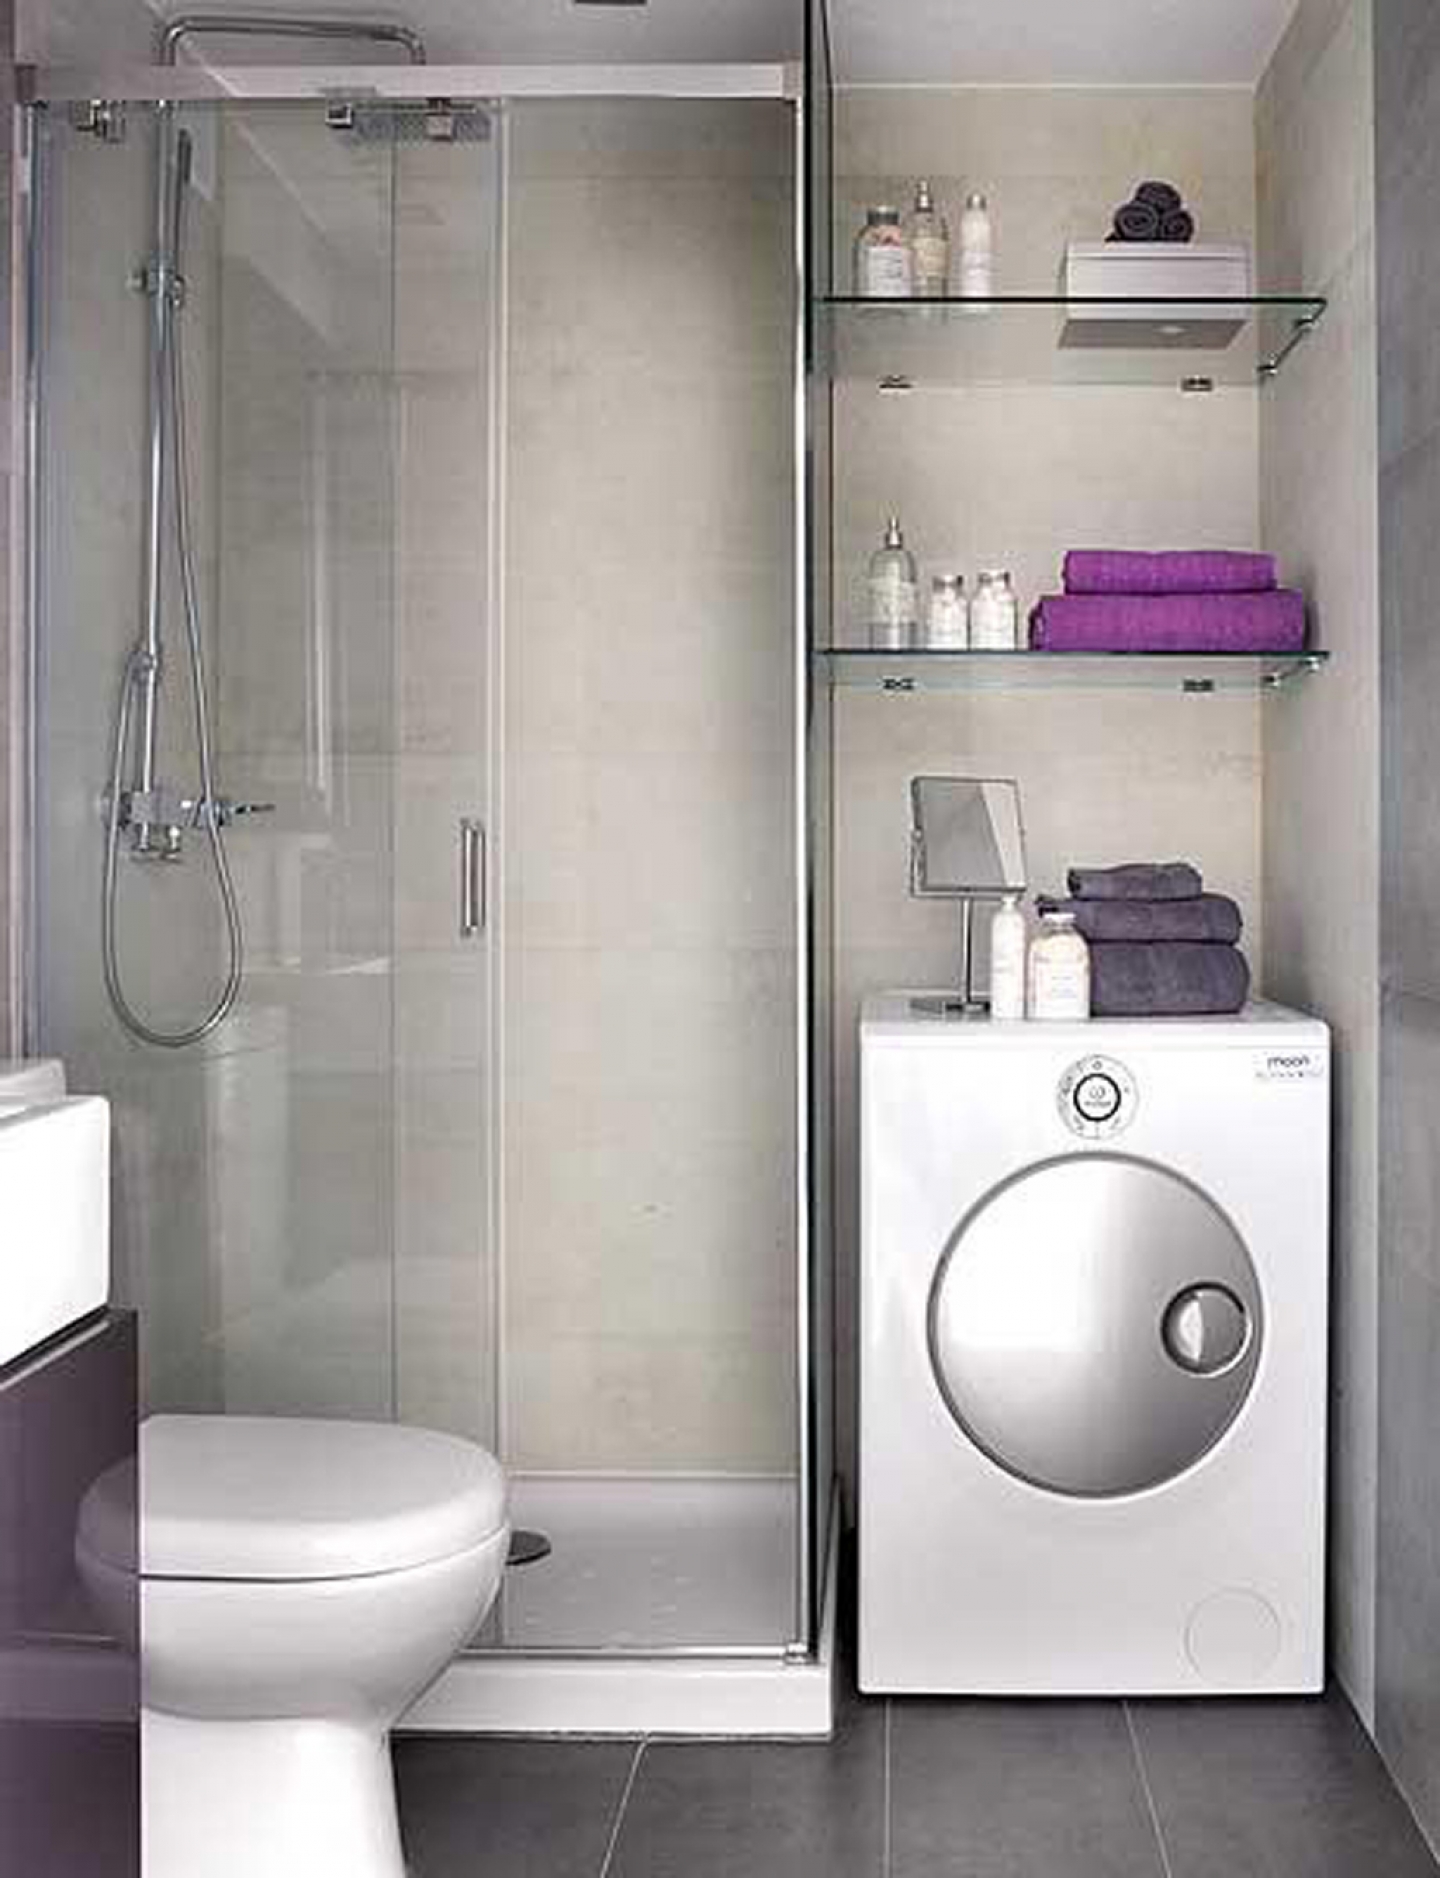 uncategorized-excellent-bathroom-design-ideas-shower-only-small-bathroom-design-ideas-on-a-budget-small-bathroom-remodel-on-a-tight-budget-bathroom-design-ideas-for-small-bathrooms-on-a-budget